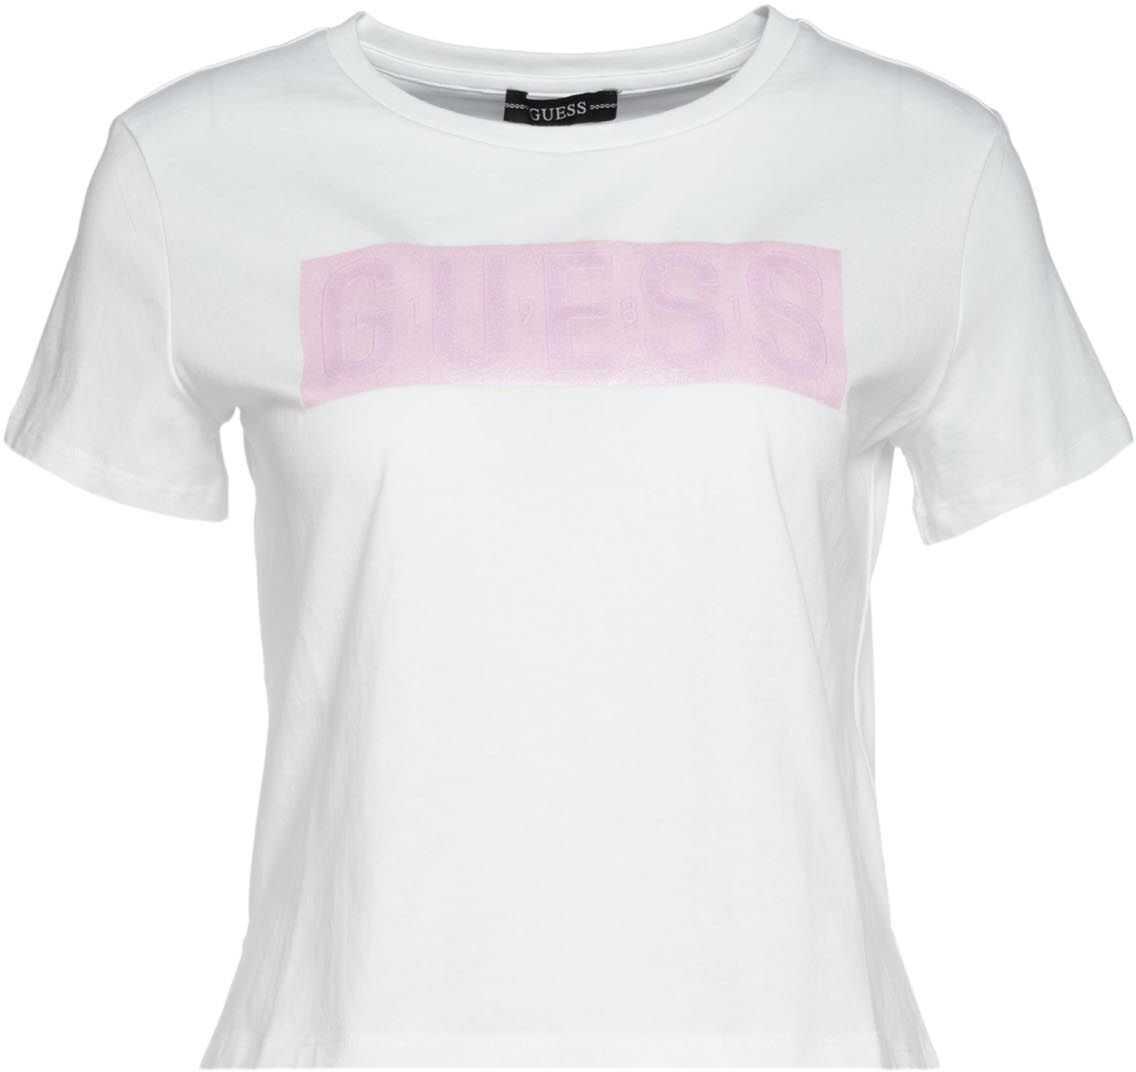 GUESS T-Shirt mit Glitzerlogo White